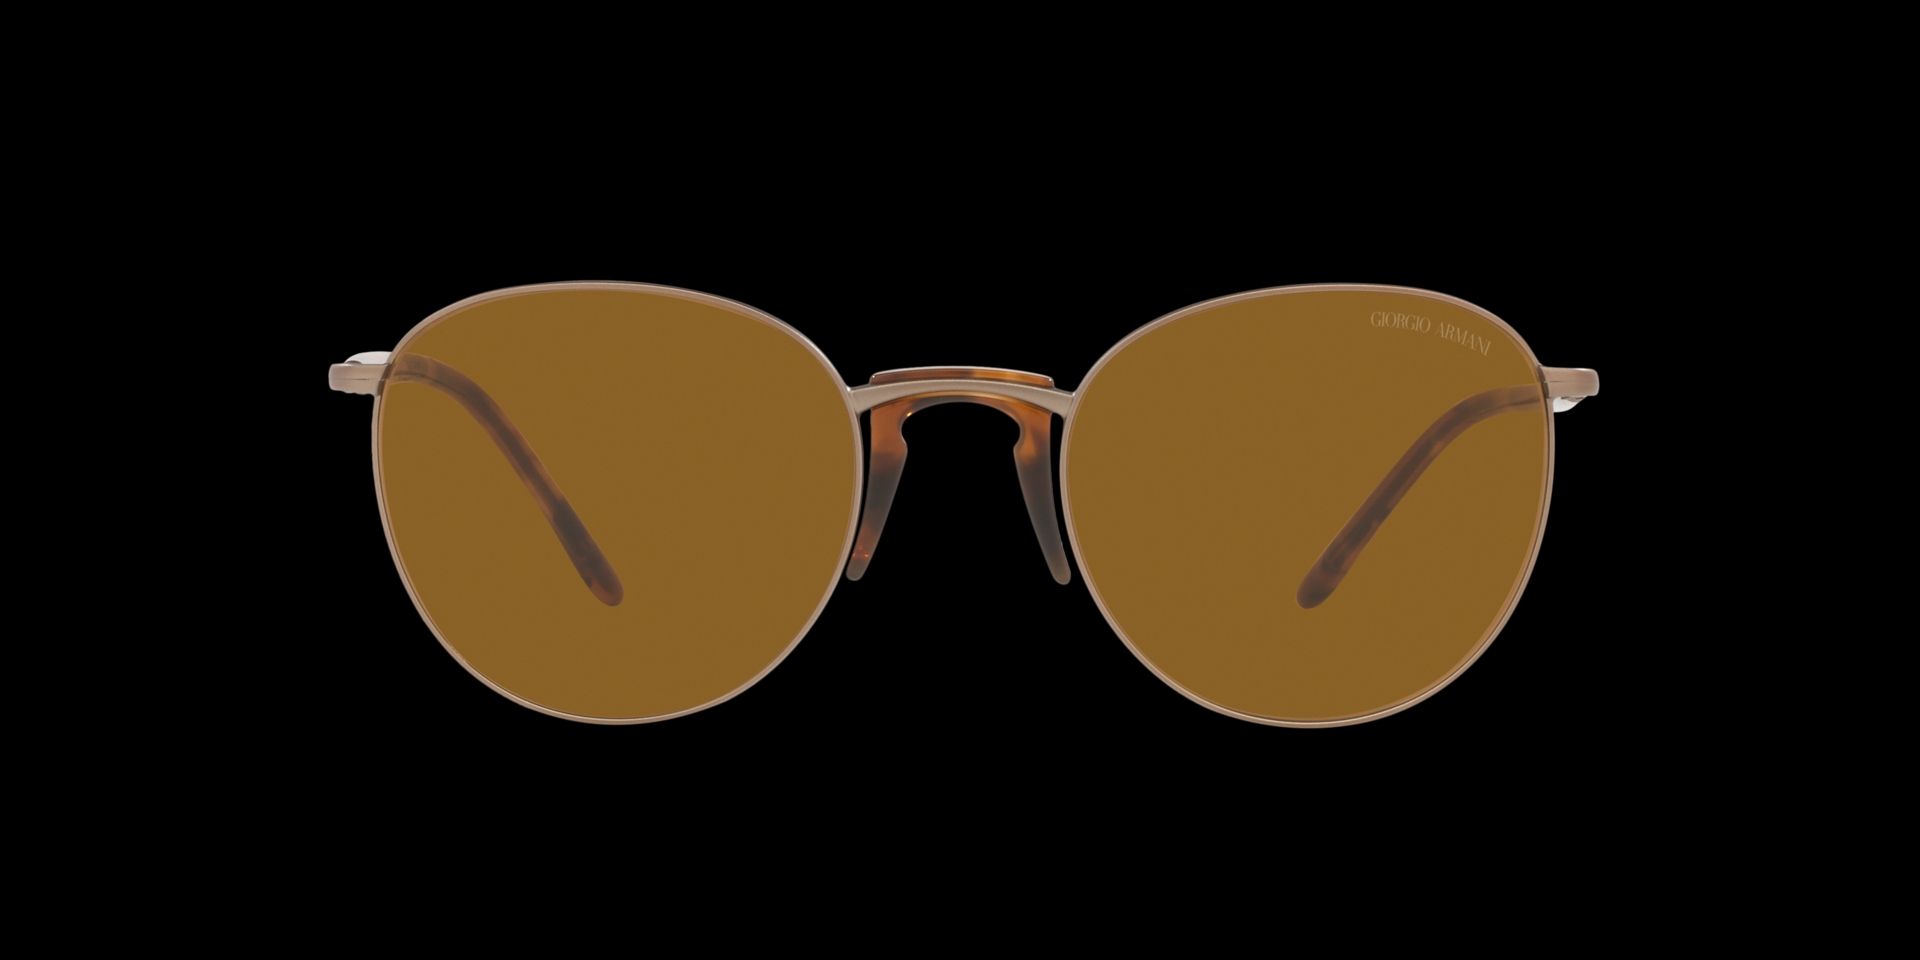 Giorgio Armani Giorgio Armani Ga 154/S 807 Sunglasses New Celluloid Black Lens Verdegrey 